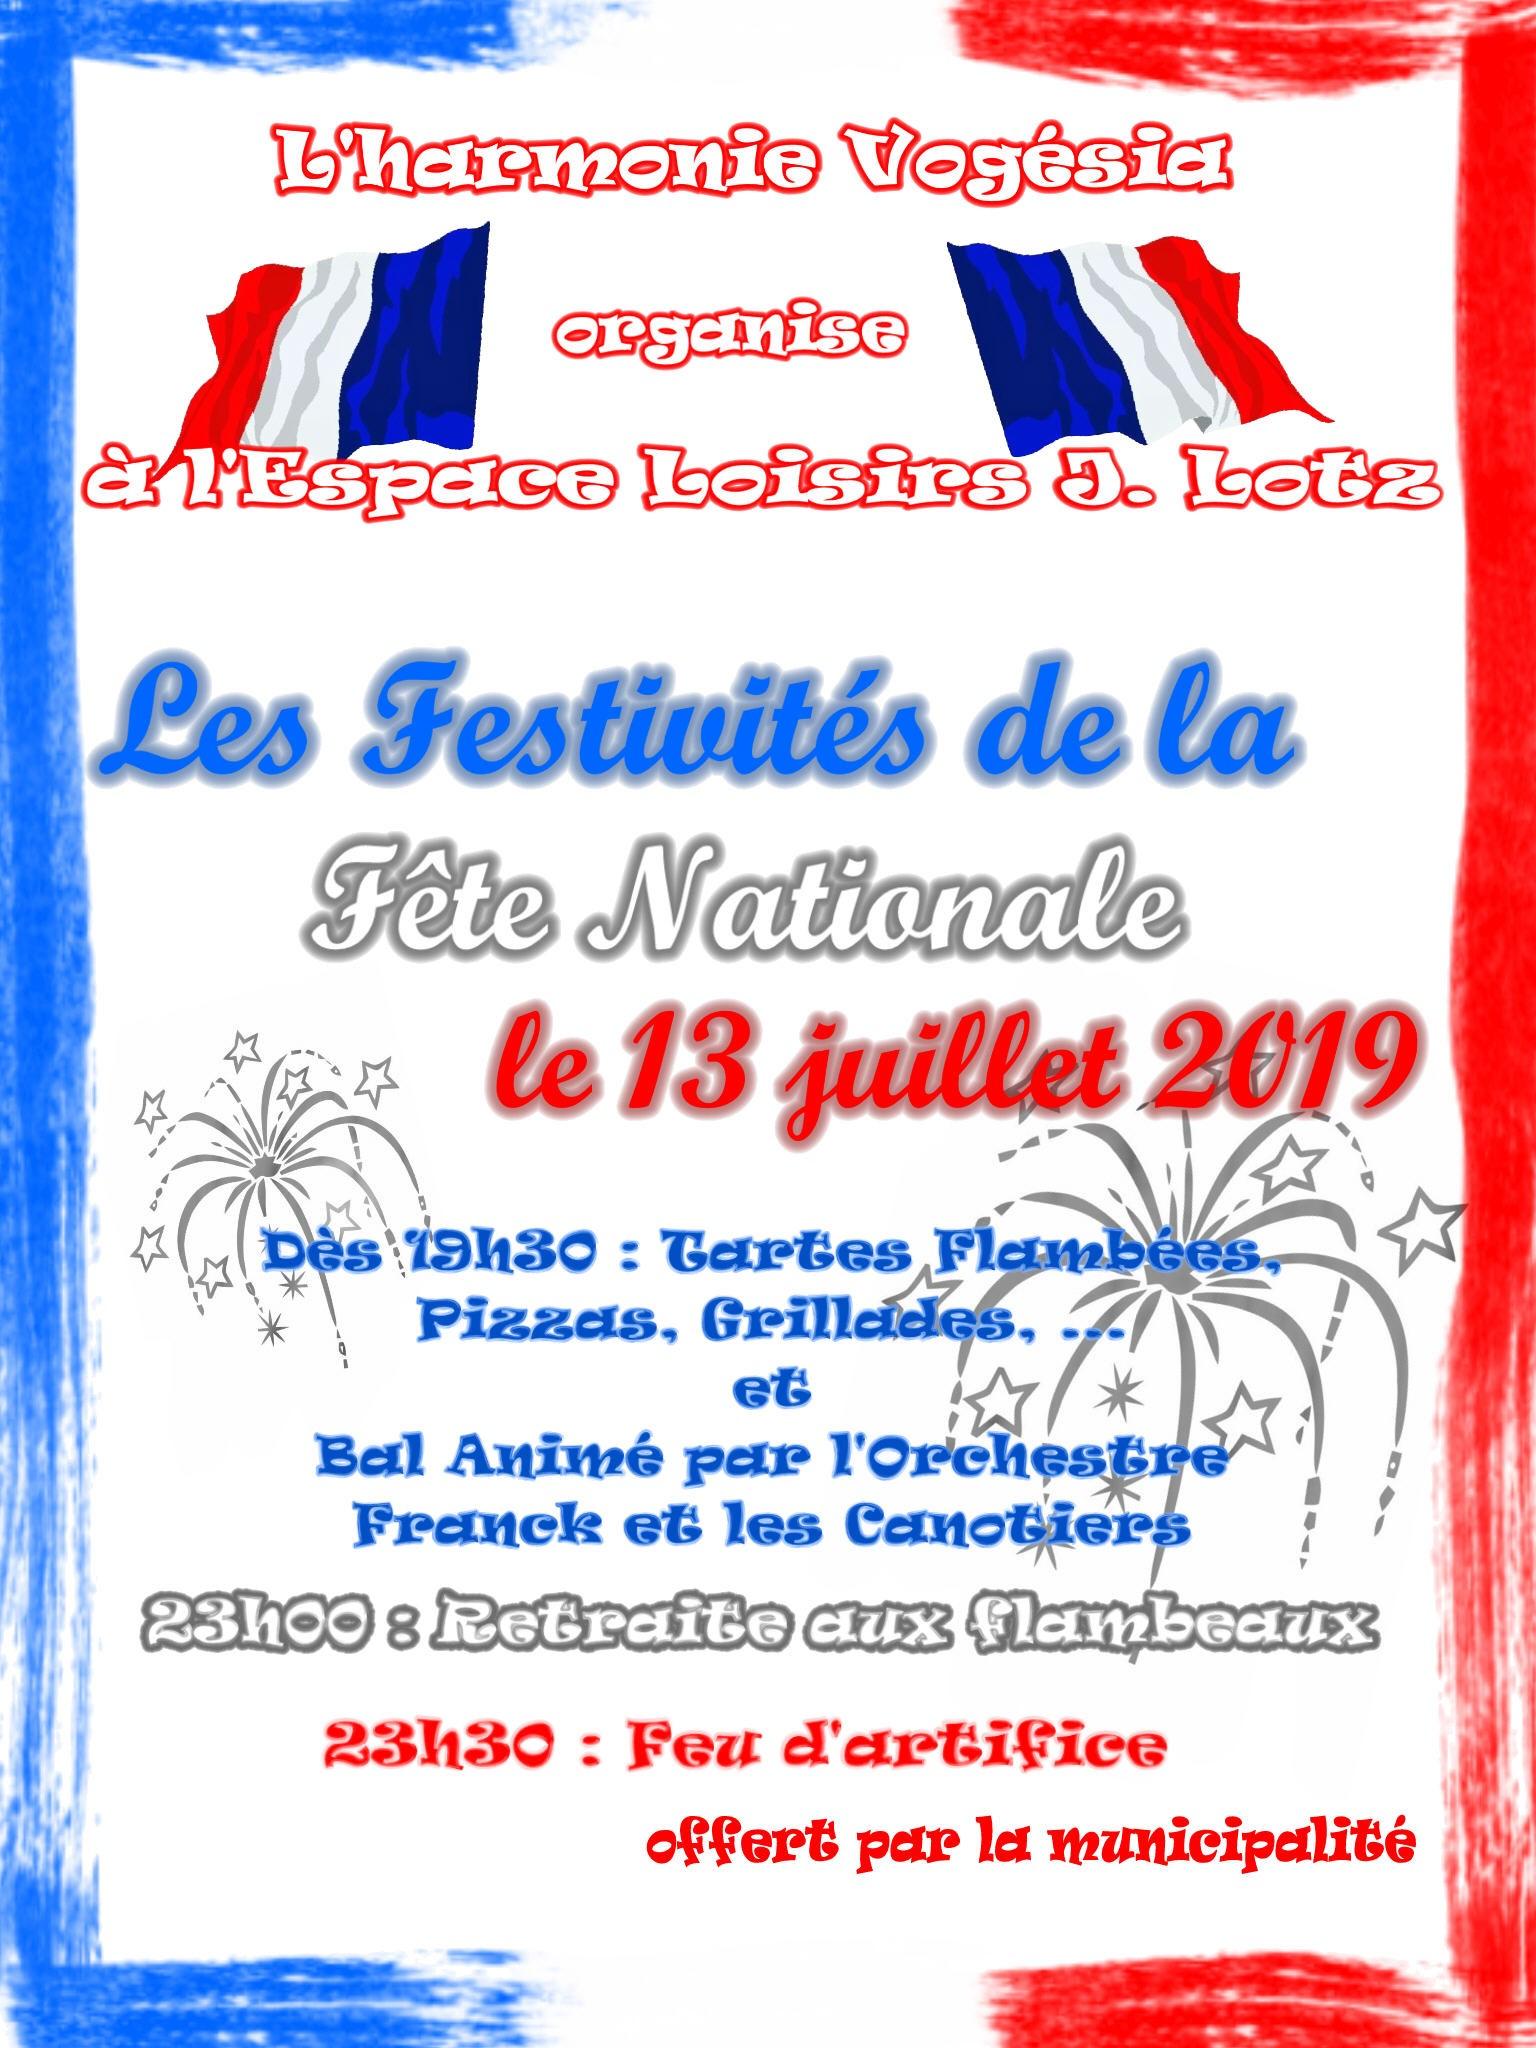 You are currently viewing FESTIVITÉS DE LA FÊTE NATIONALE – 13 JUILLET 2019